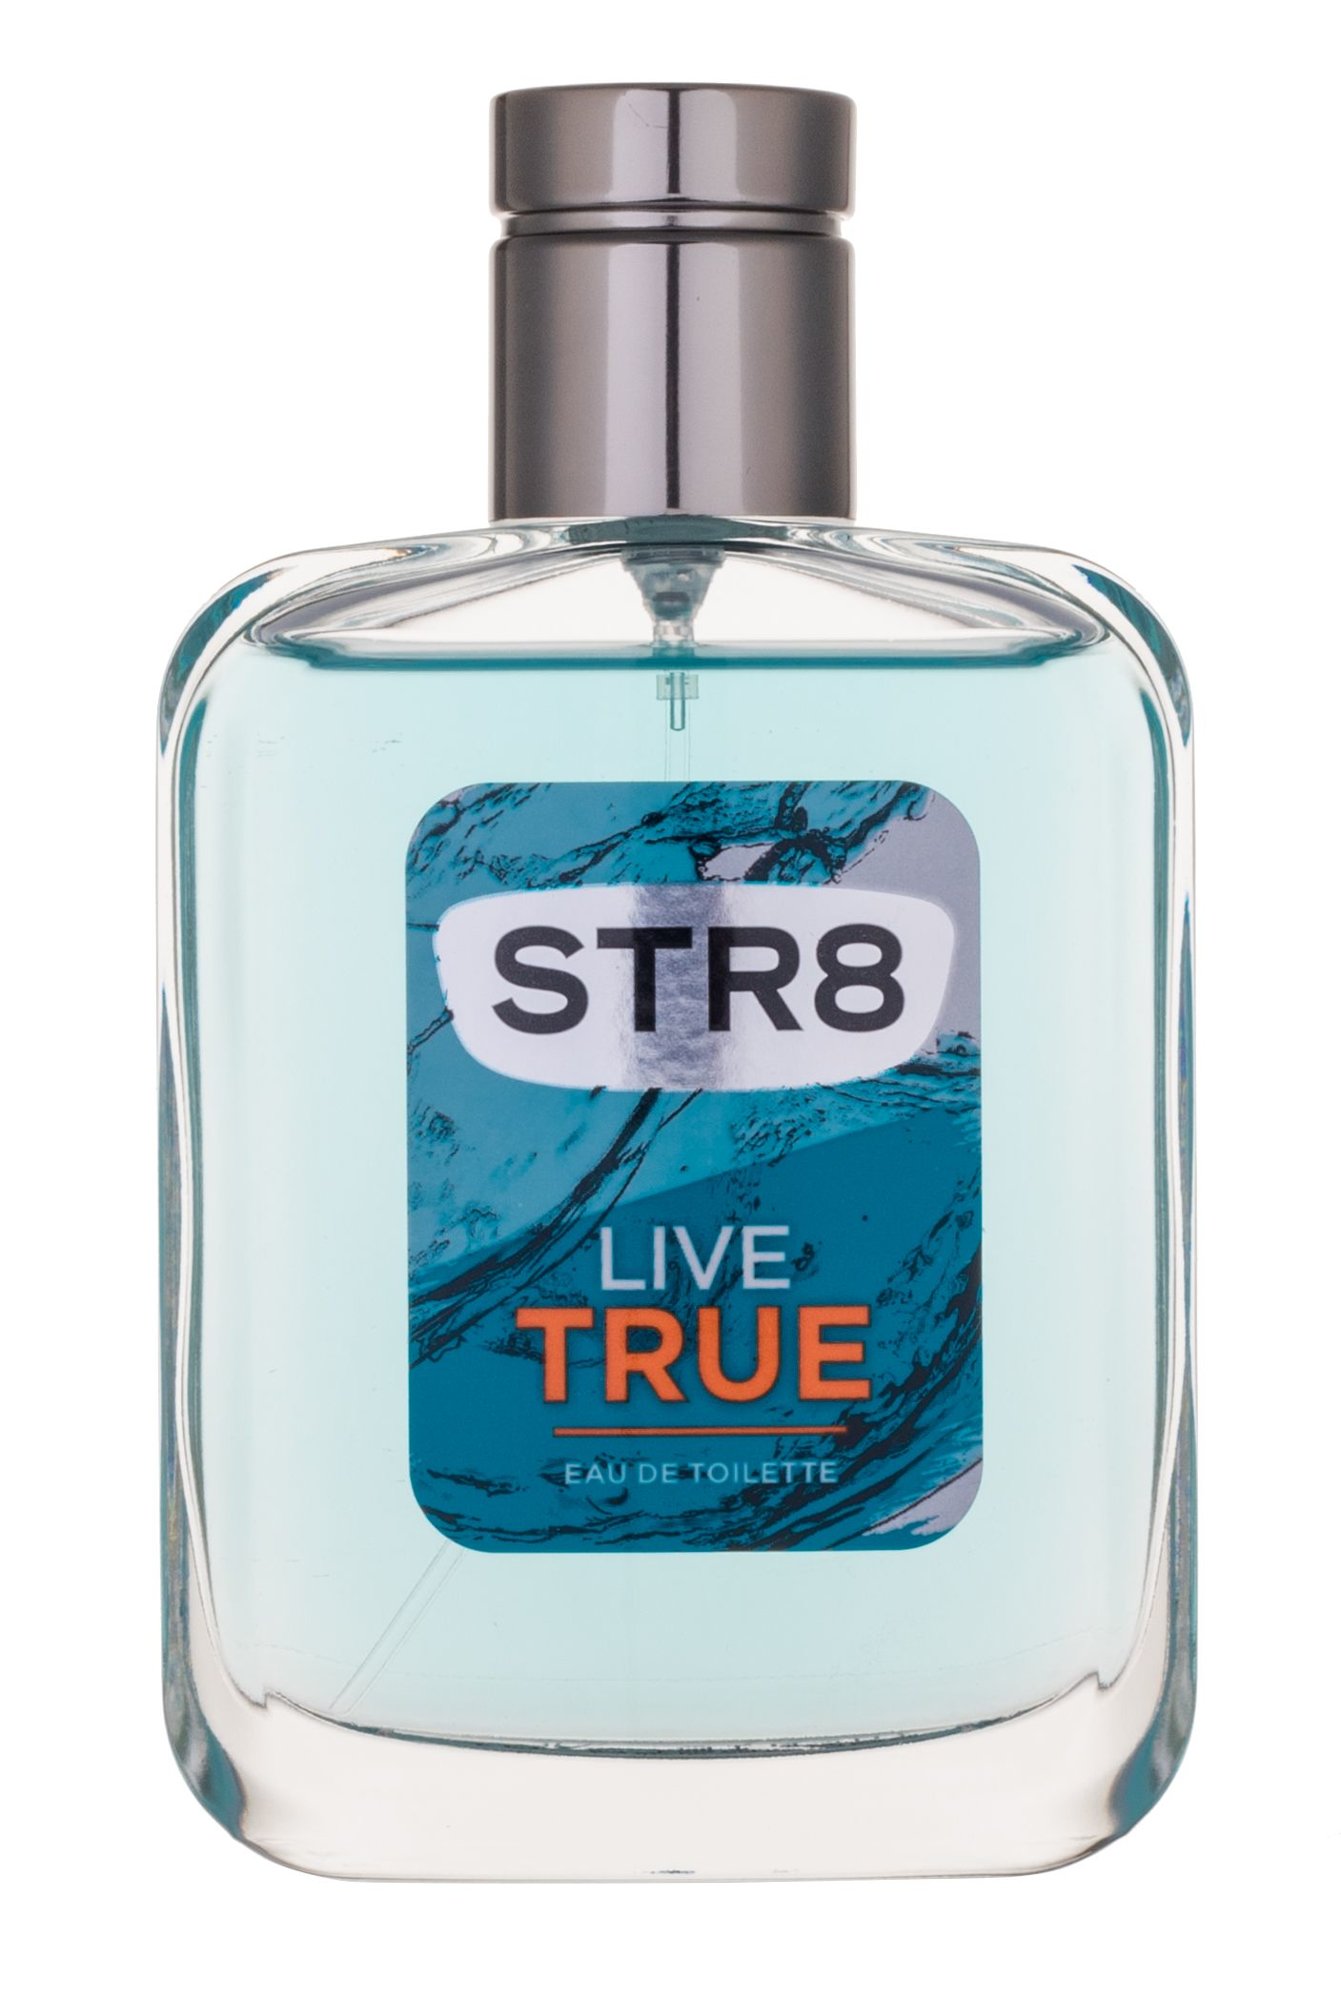 STR8 Live True